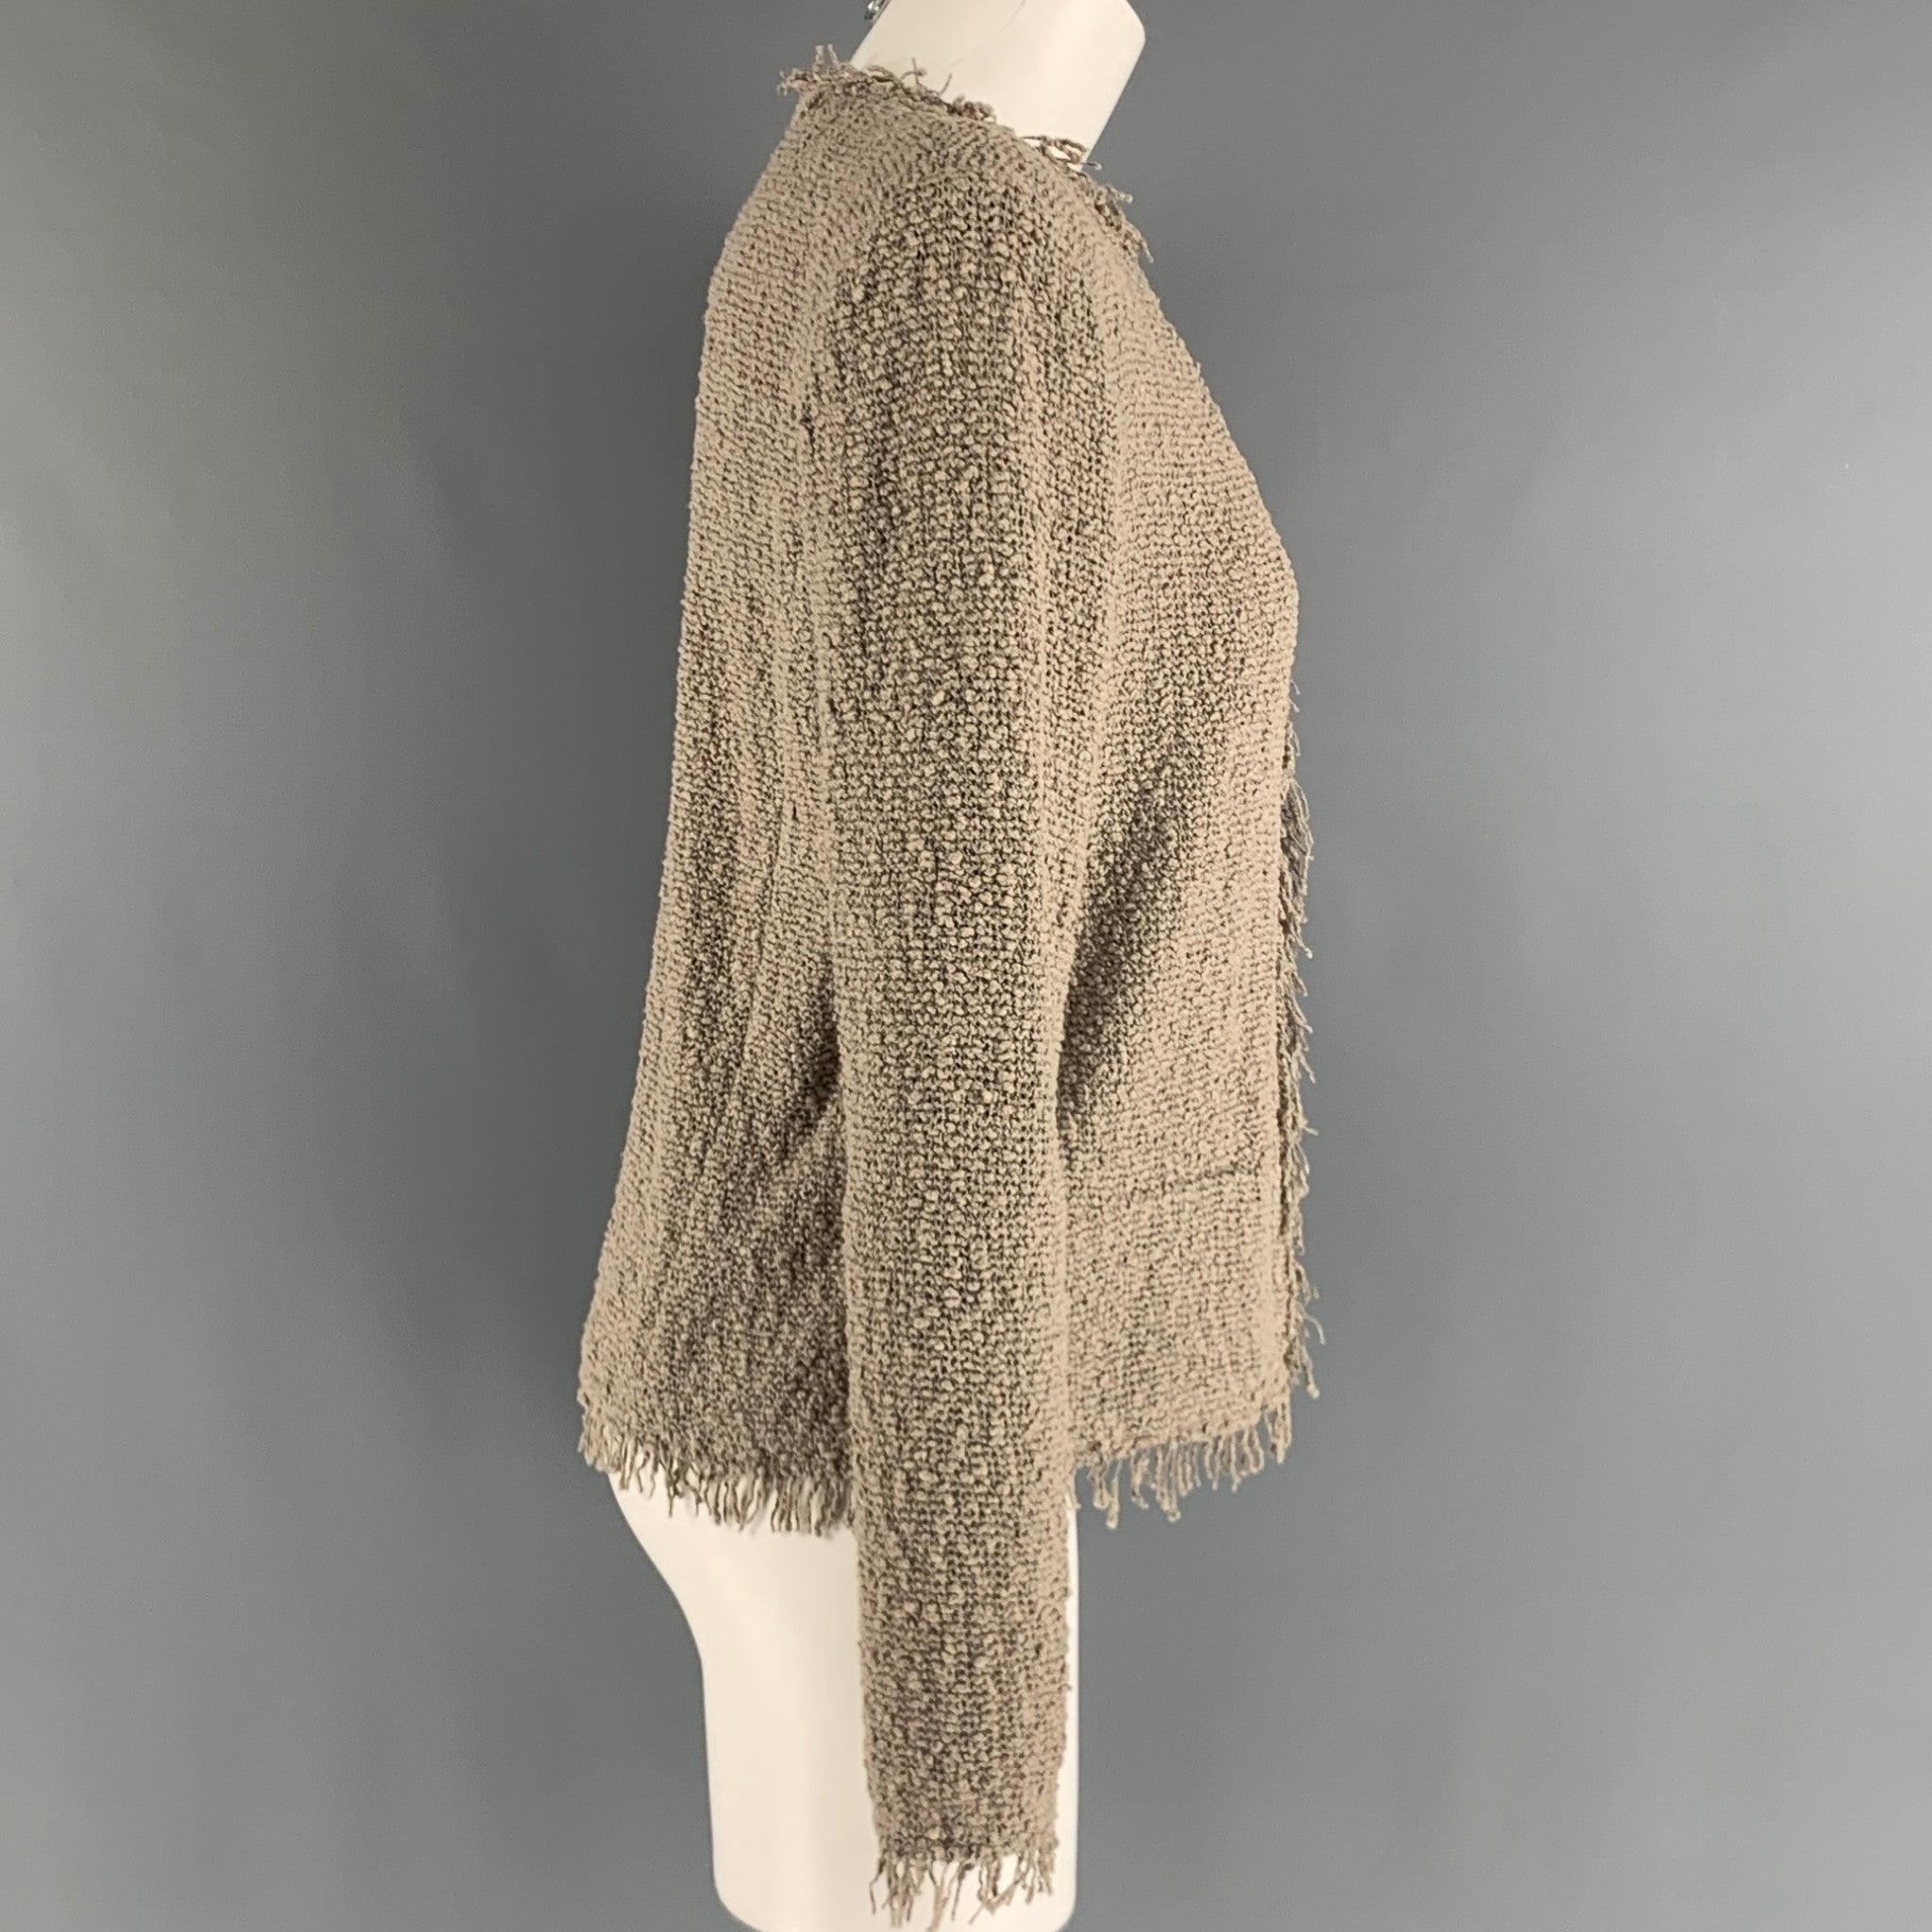 Le blazer de la collection 21 Winter d'IRO SHAVANI se compose d'une maille texturée en coton polyamide gris et présente un devant ouvert, des épaulettes et des ornements à franges.Nouveau avec étiquettes. 

Marqué :   38 

Mesures : 
 
Épaule : 16